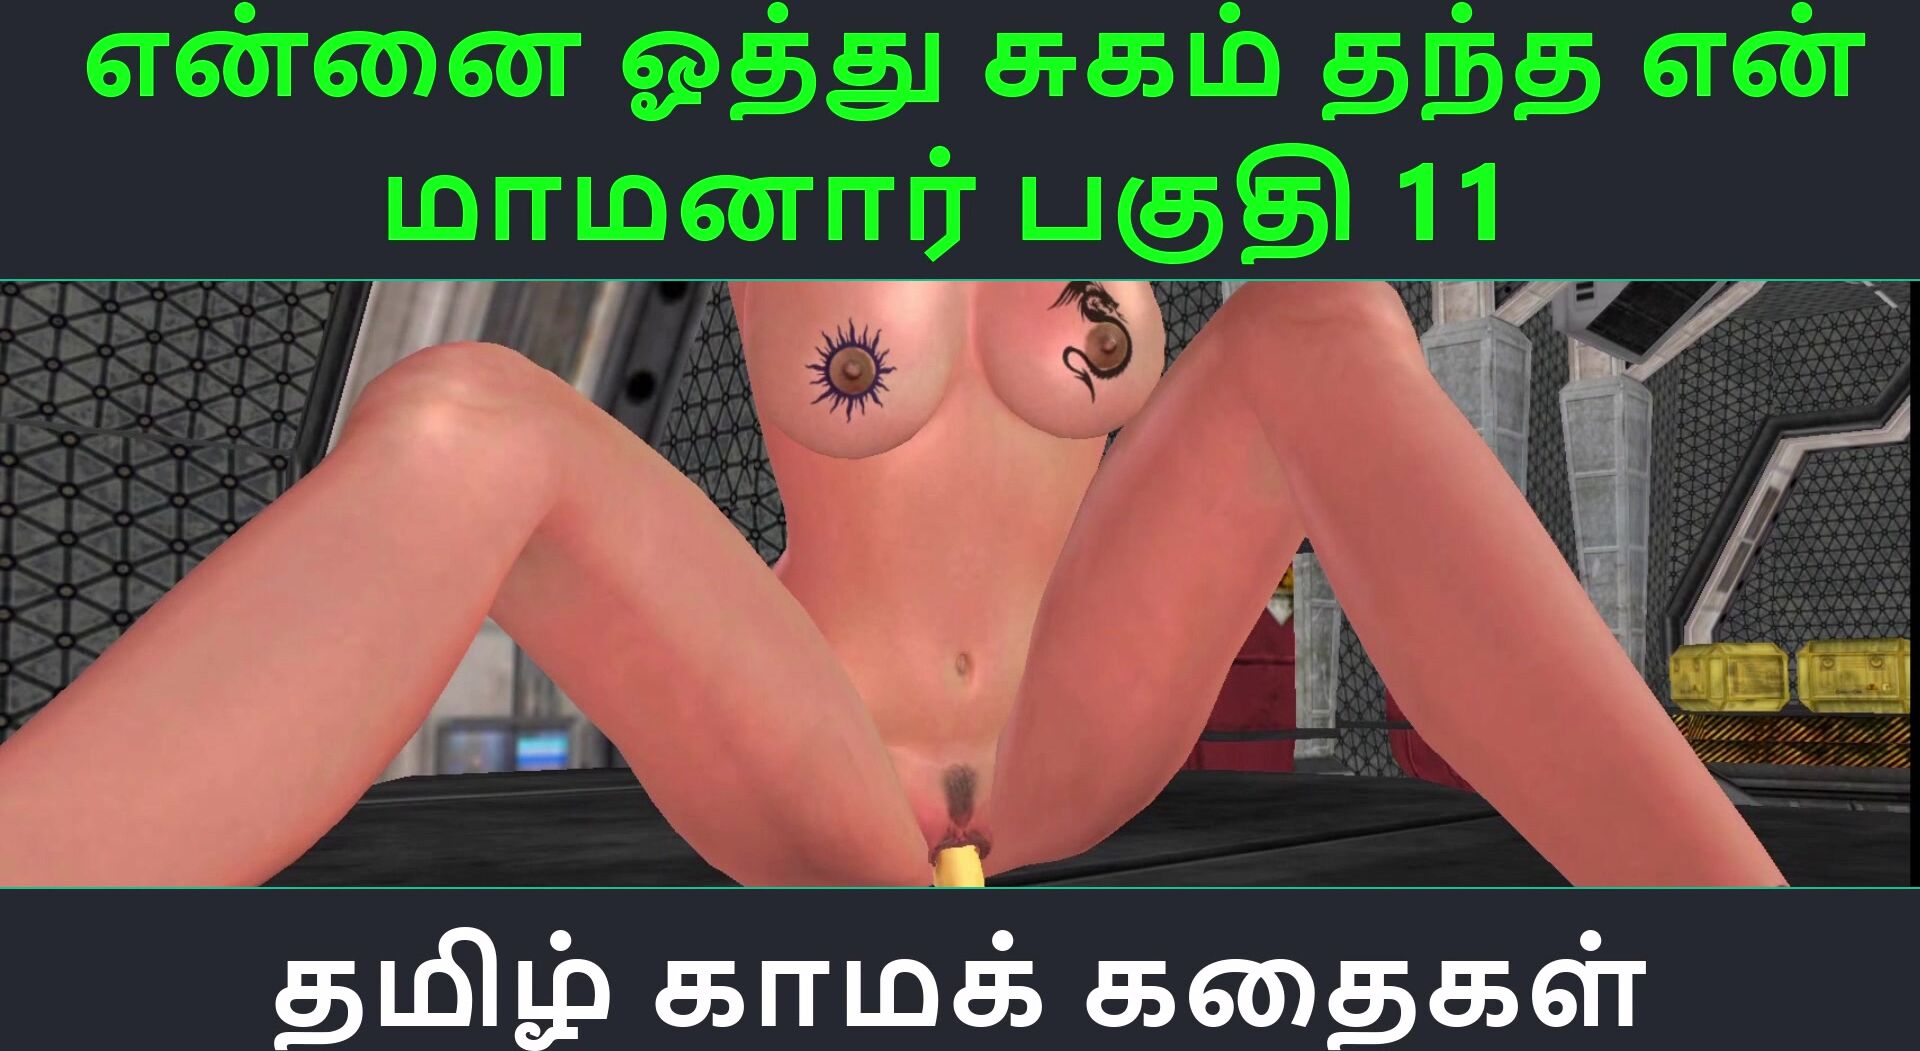 Tamil Audio Sex Story - Tamil Kama Kathai - Ennai Oothu Sugam thantha Maamanaar Part - 11